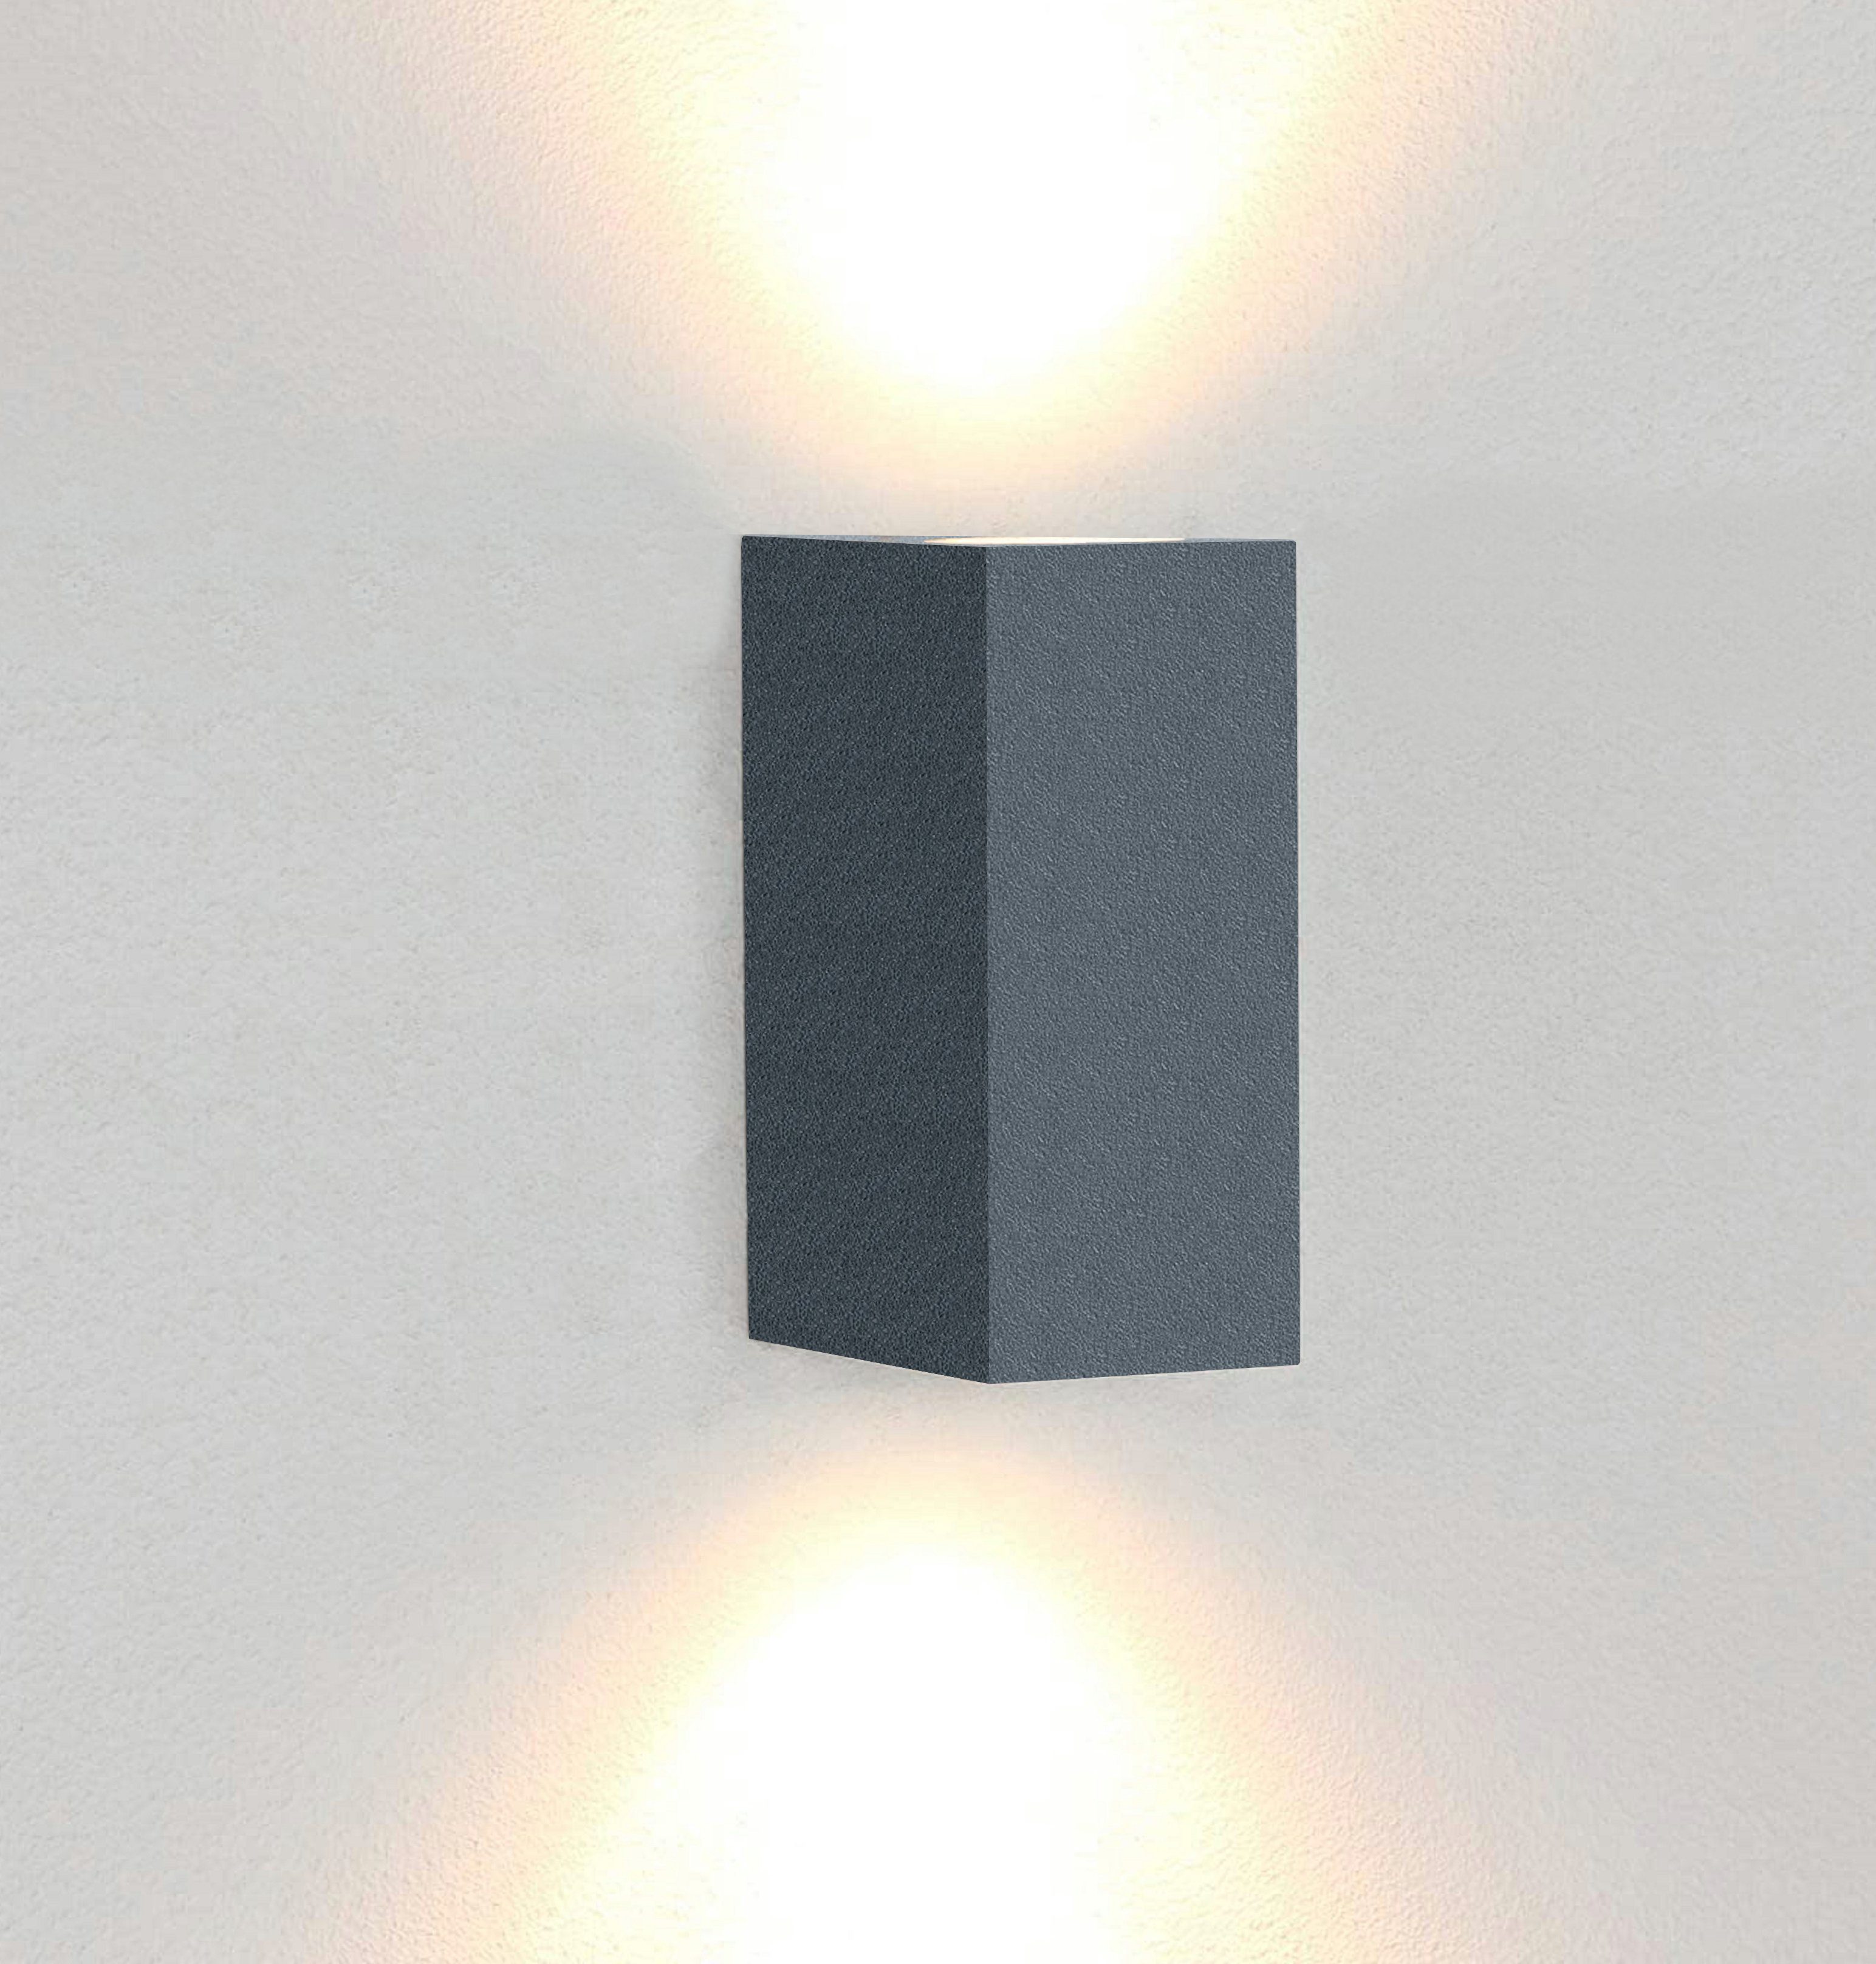 Cube Würfel LED Wand Leuchte Lampe Up Down für außen/innen wasserdicht Warmweiß 